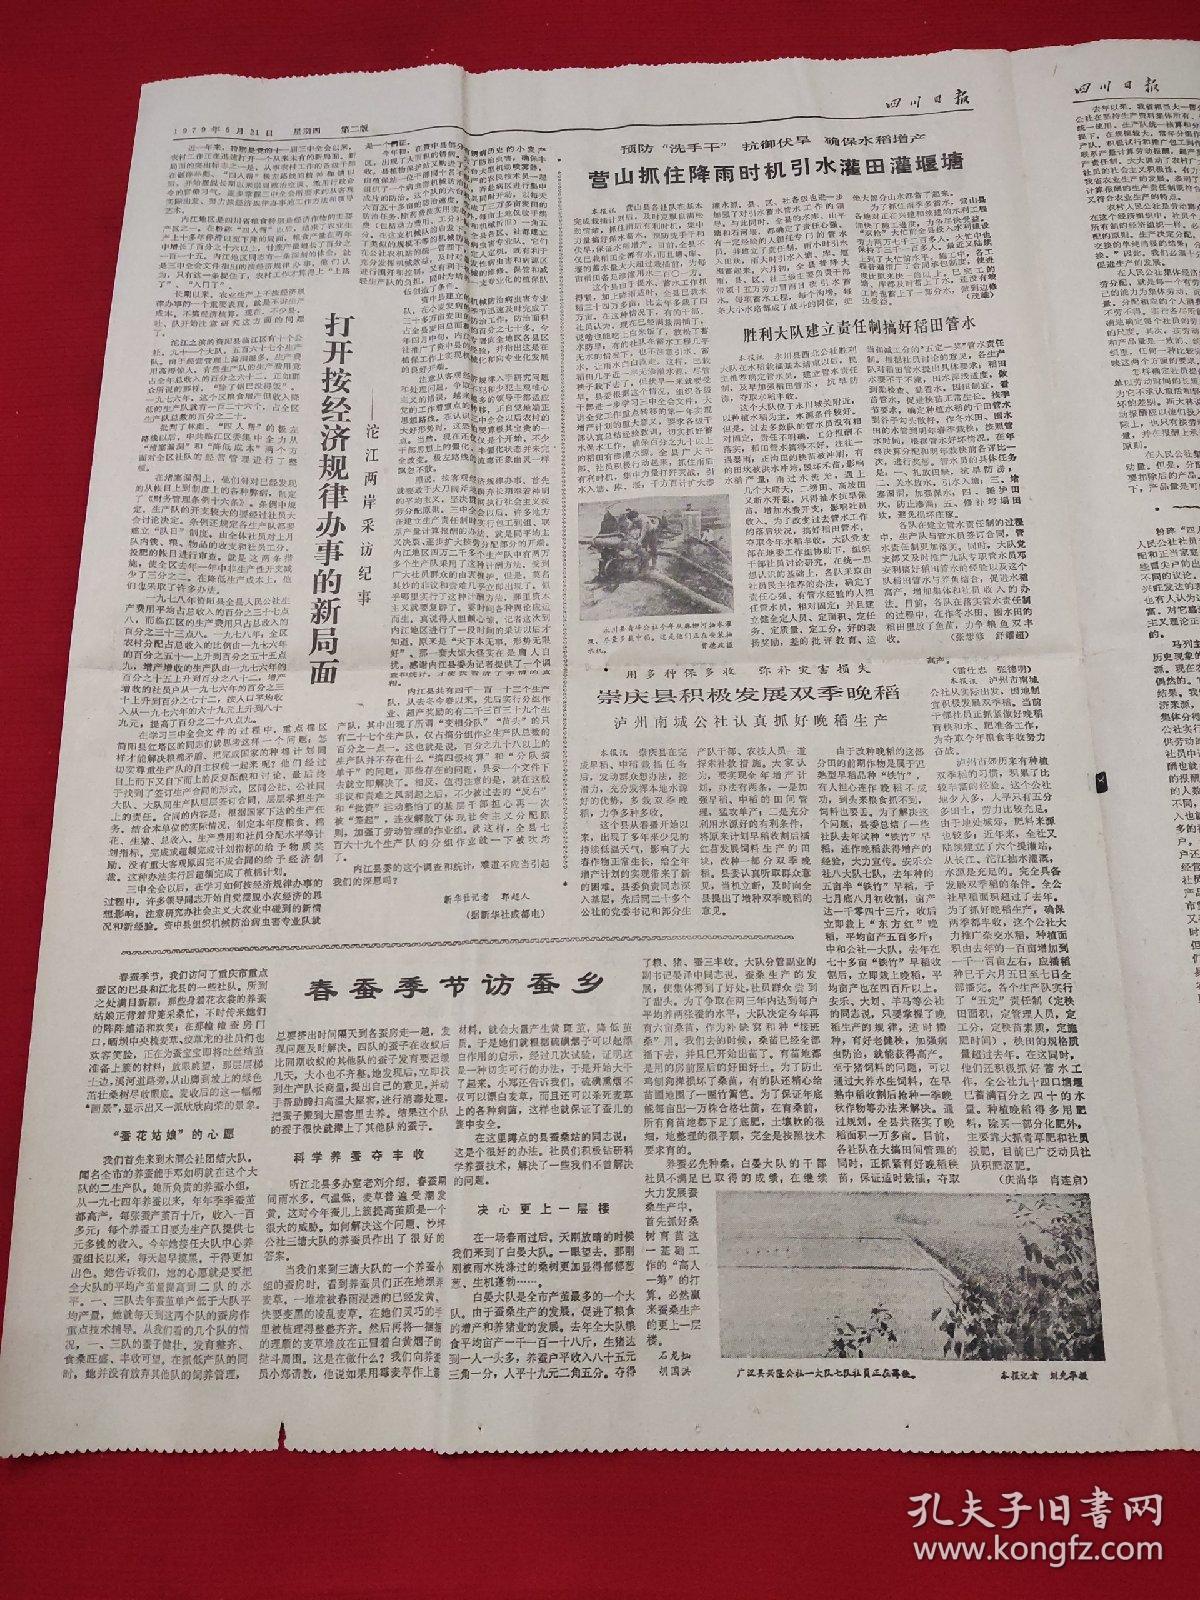 原版四川日报1979年6月21日